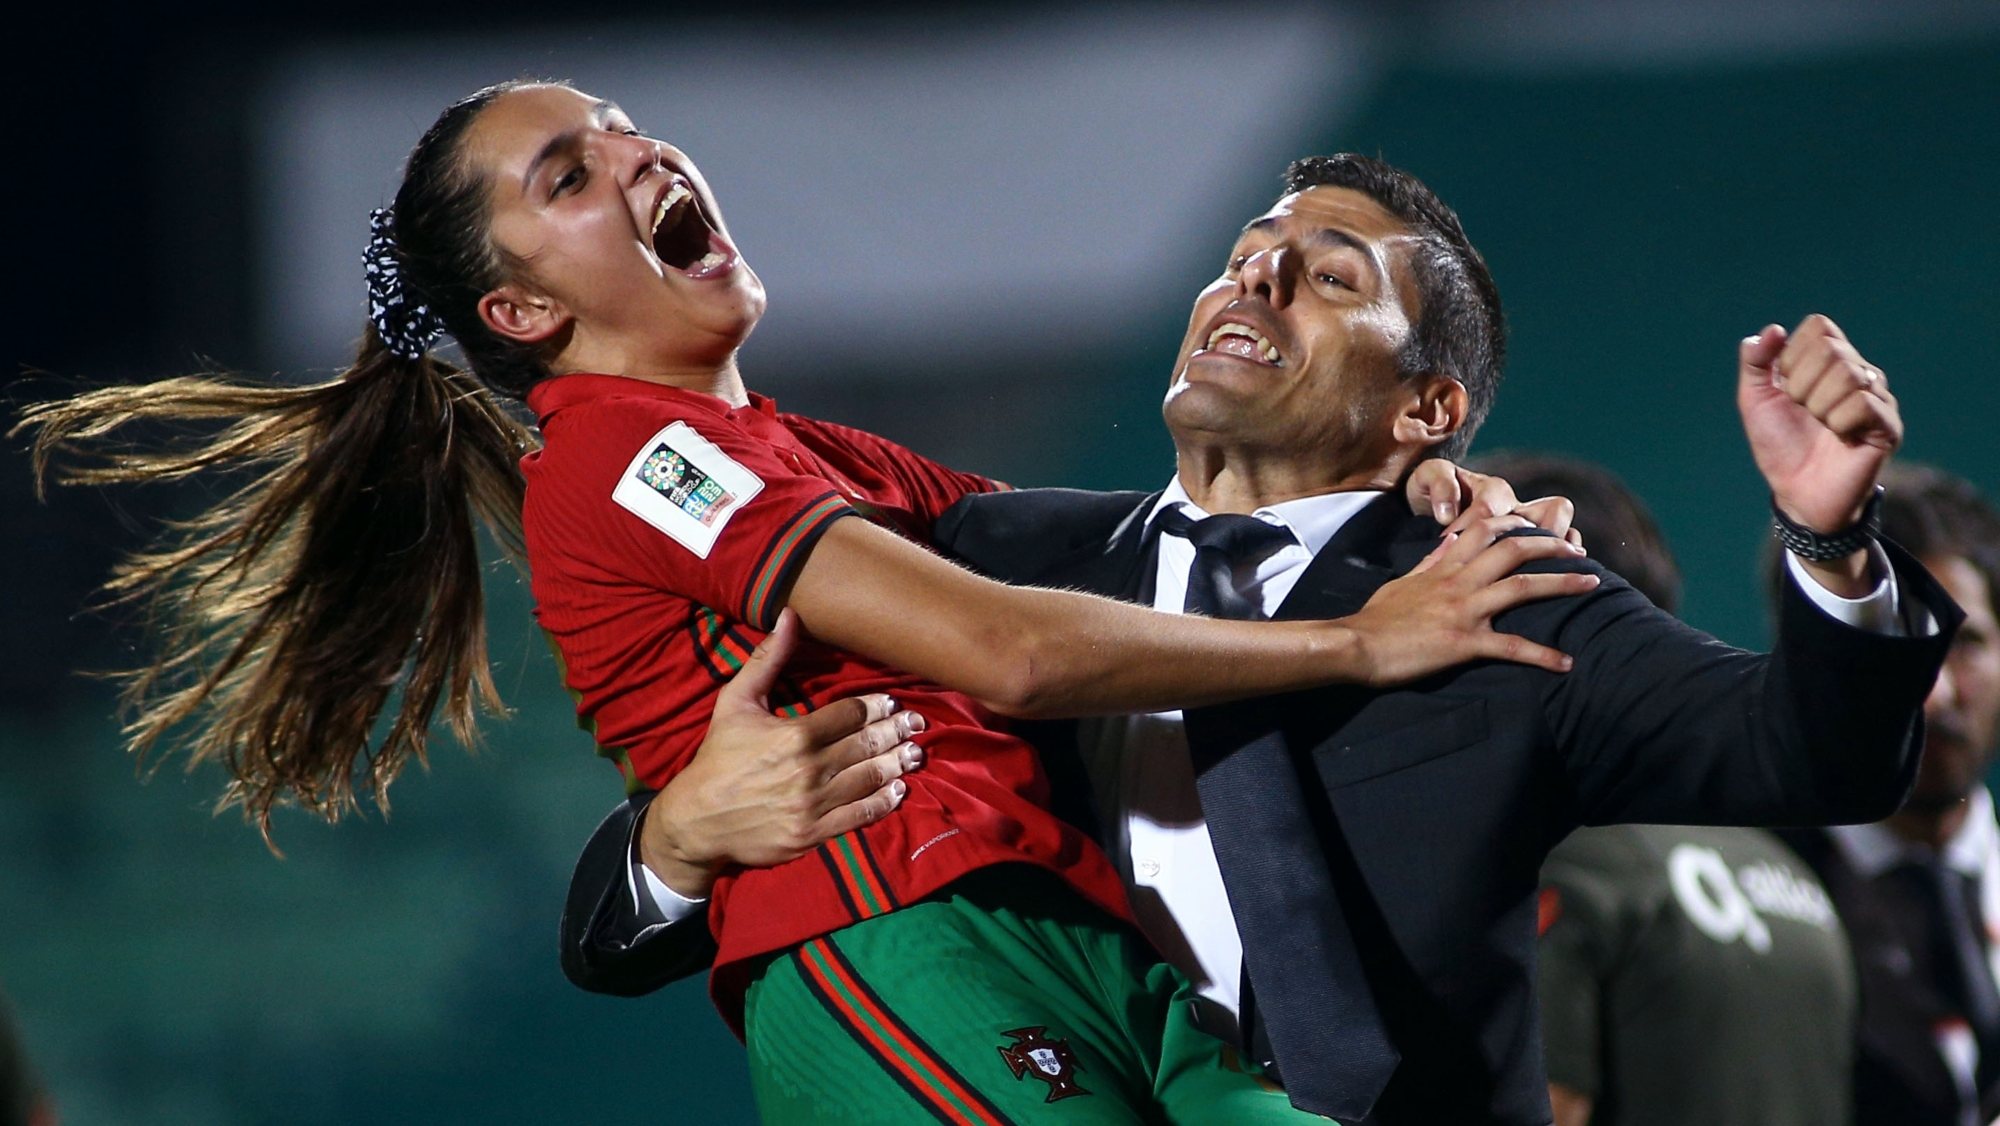 Portugal empata a zero com Itália em jogo de futebol feminino sub-23 -  Seleção Feminina - Jornal Record